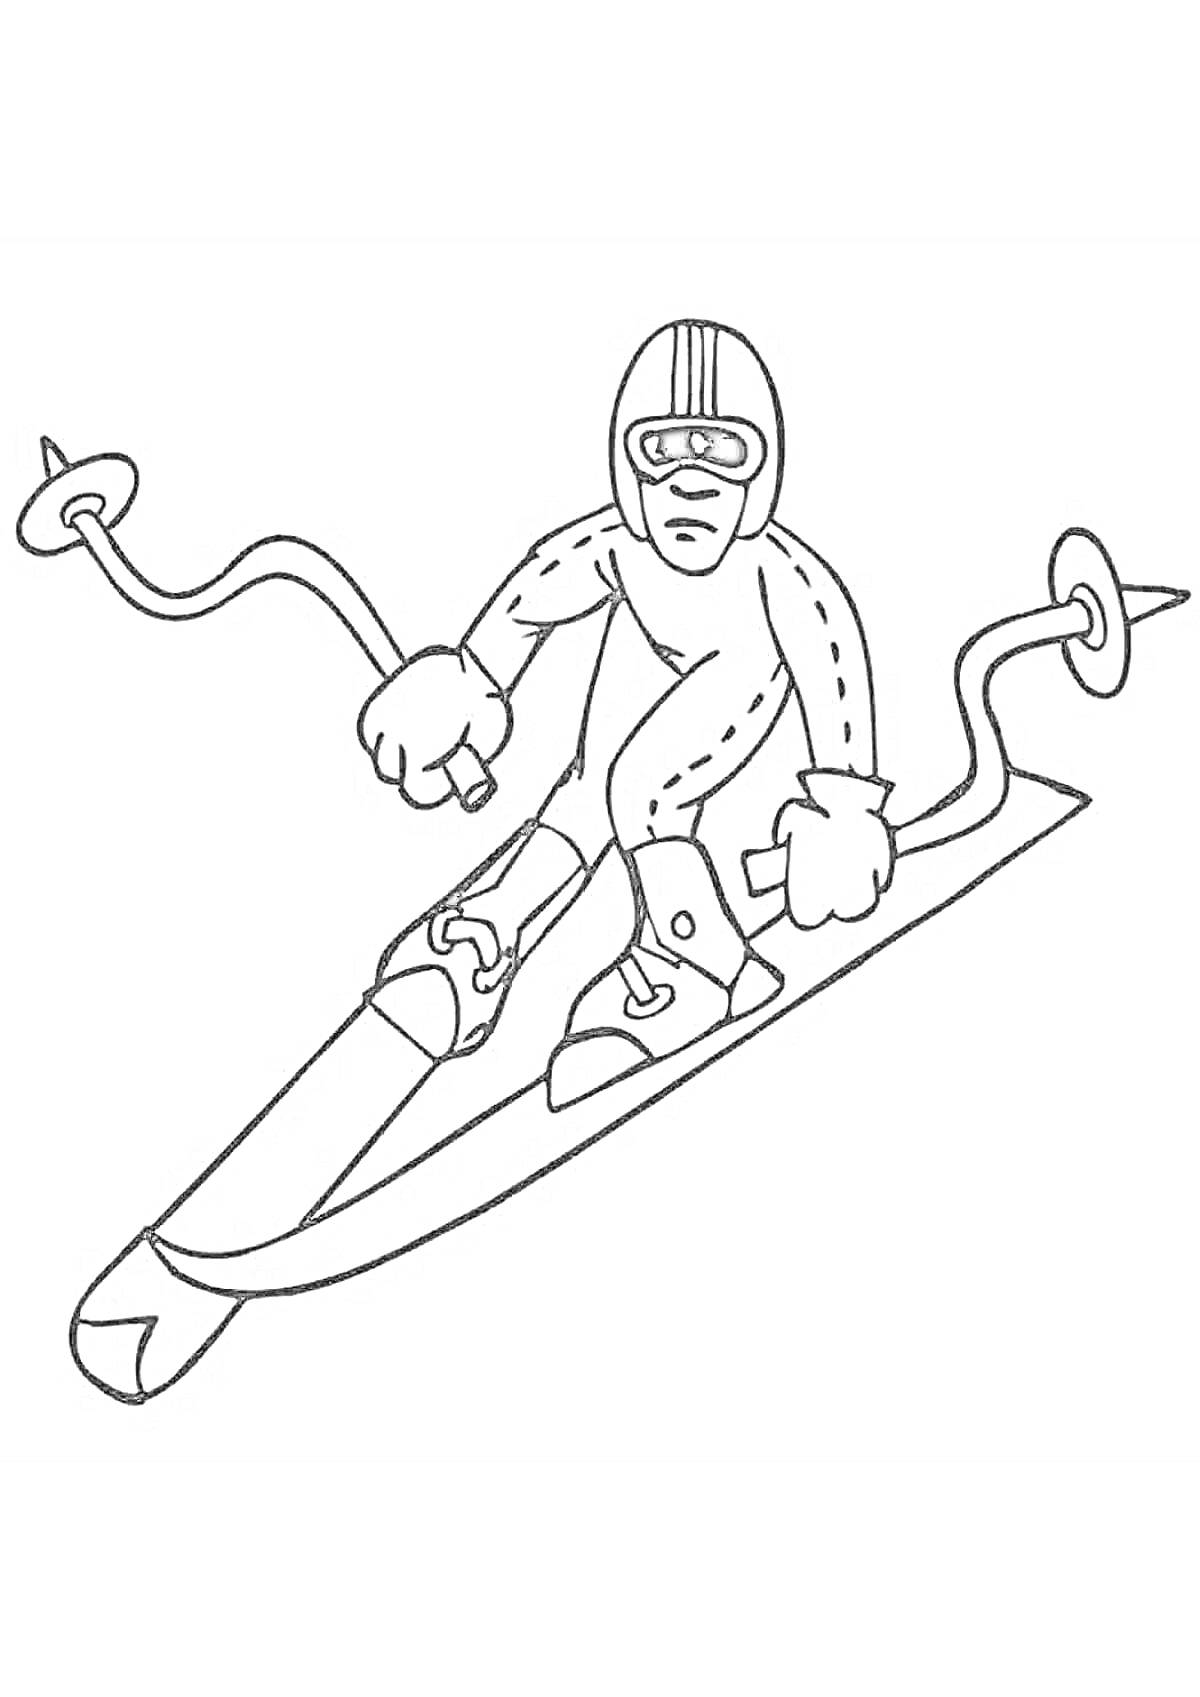 Раскраска Спортсмен на горных лыжах с палками в защитной экипировке